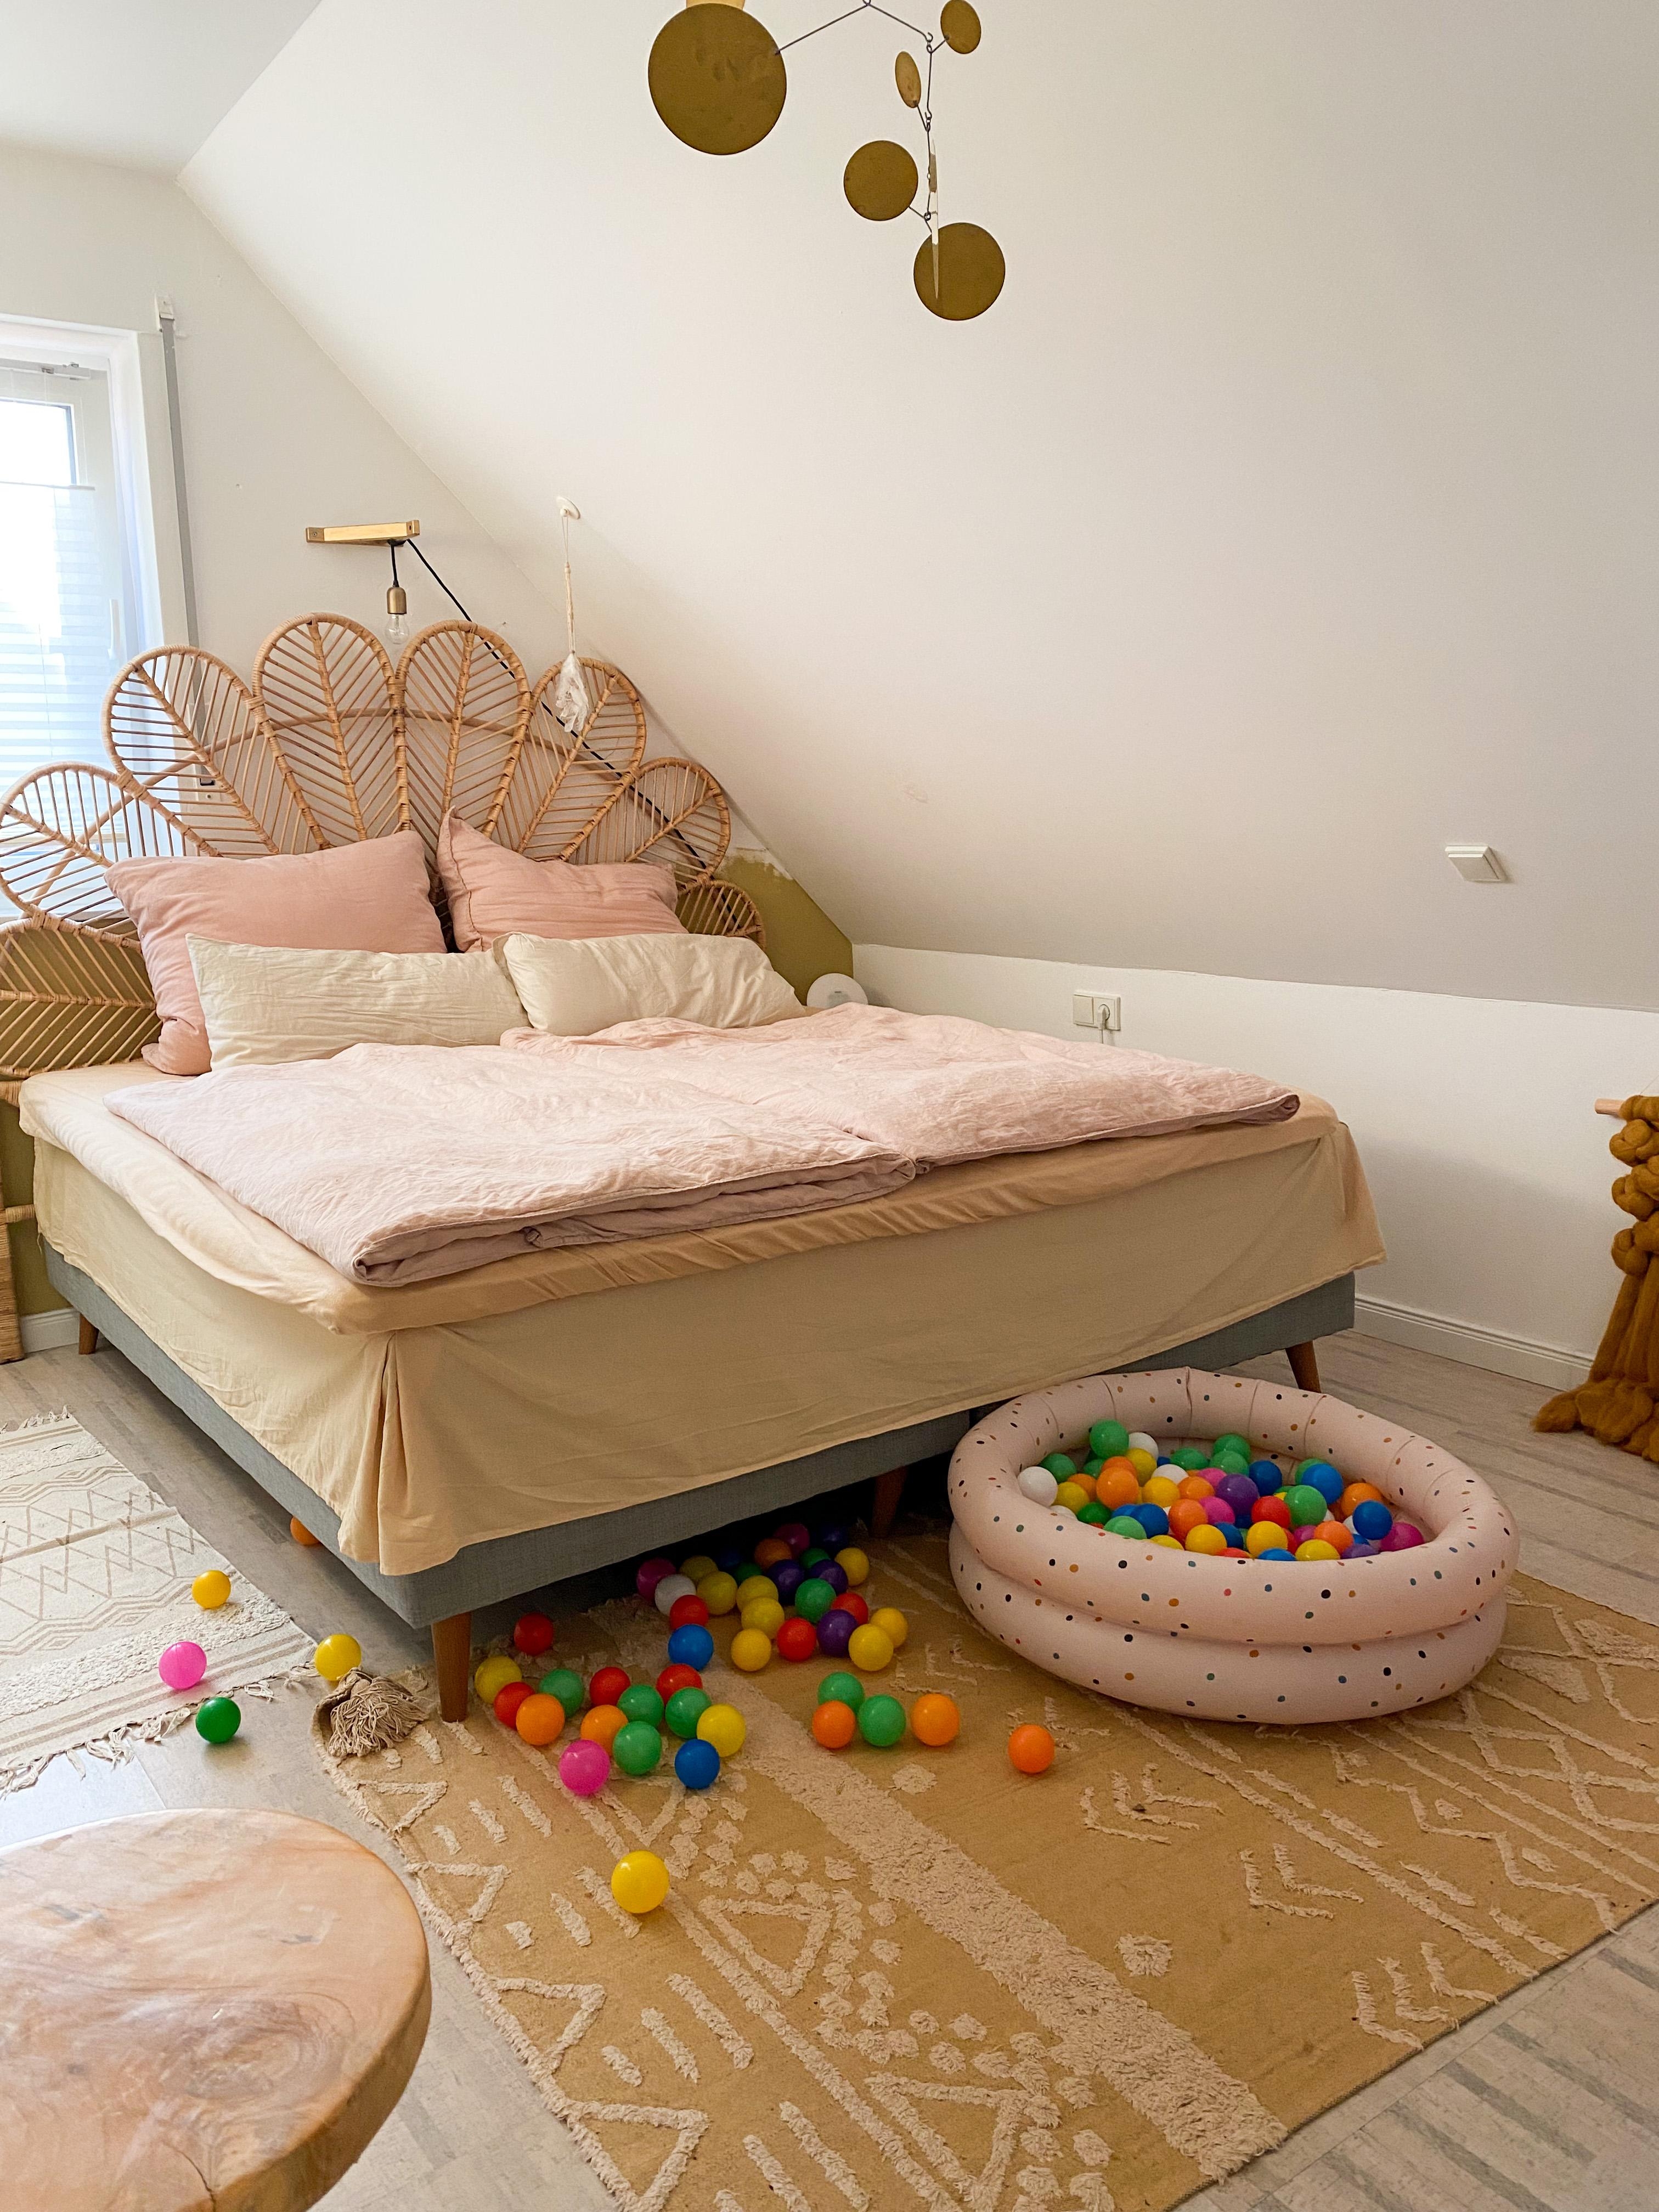 Neues Schlafzimmer, Platz für Farbe oder? 
#schlafzimmer #bedroom #couchstyle 